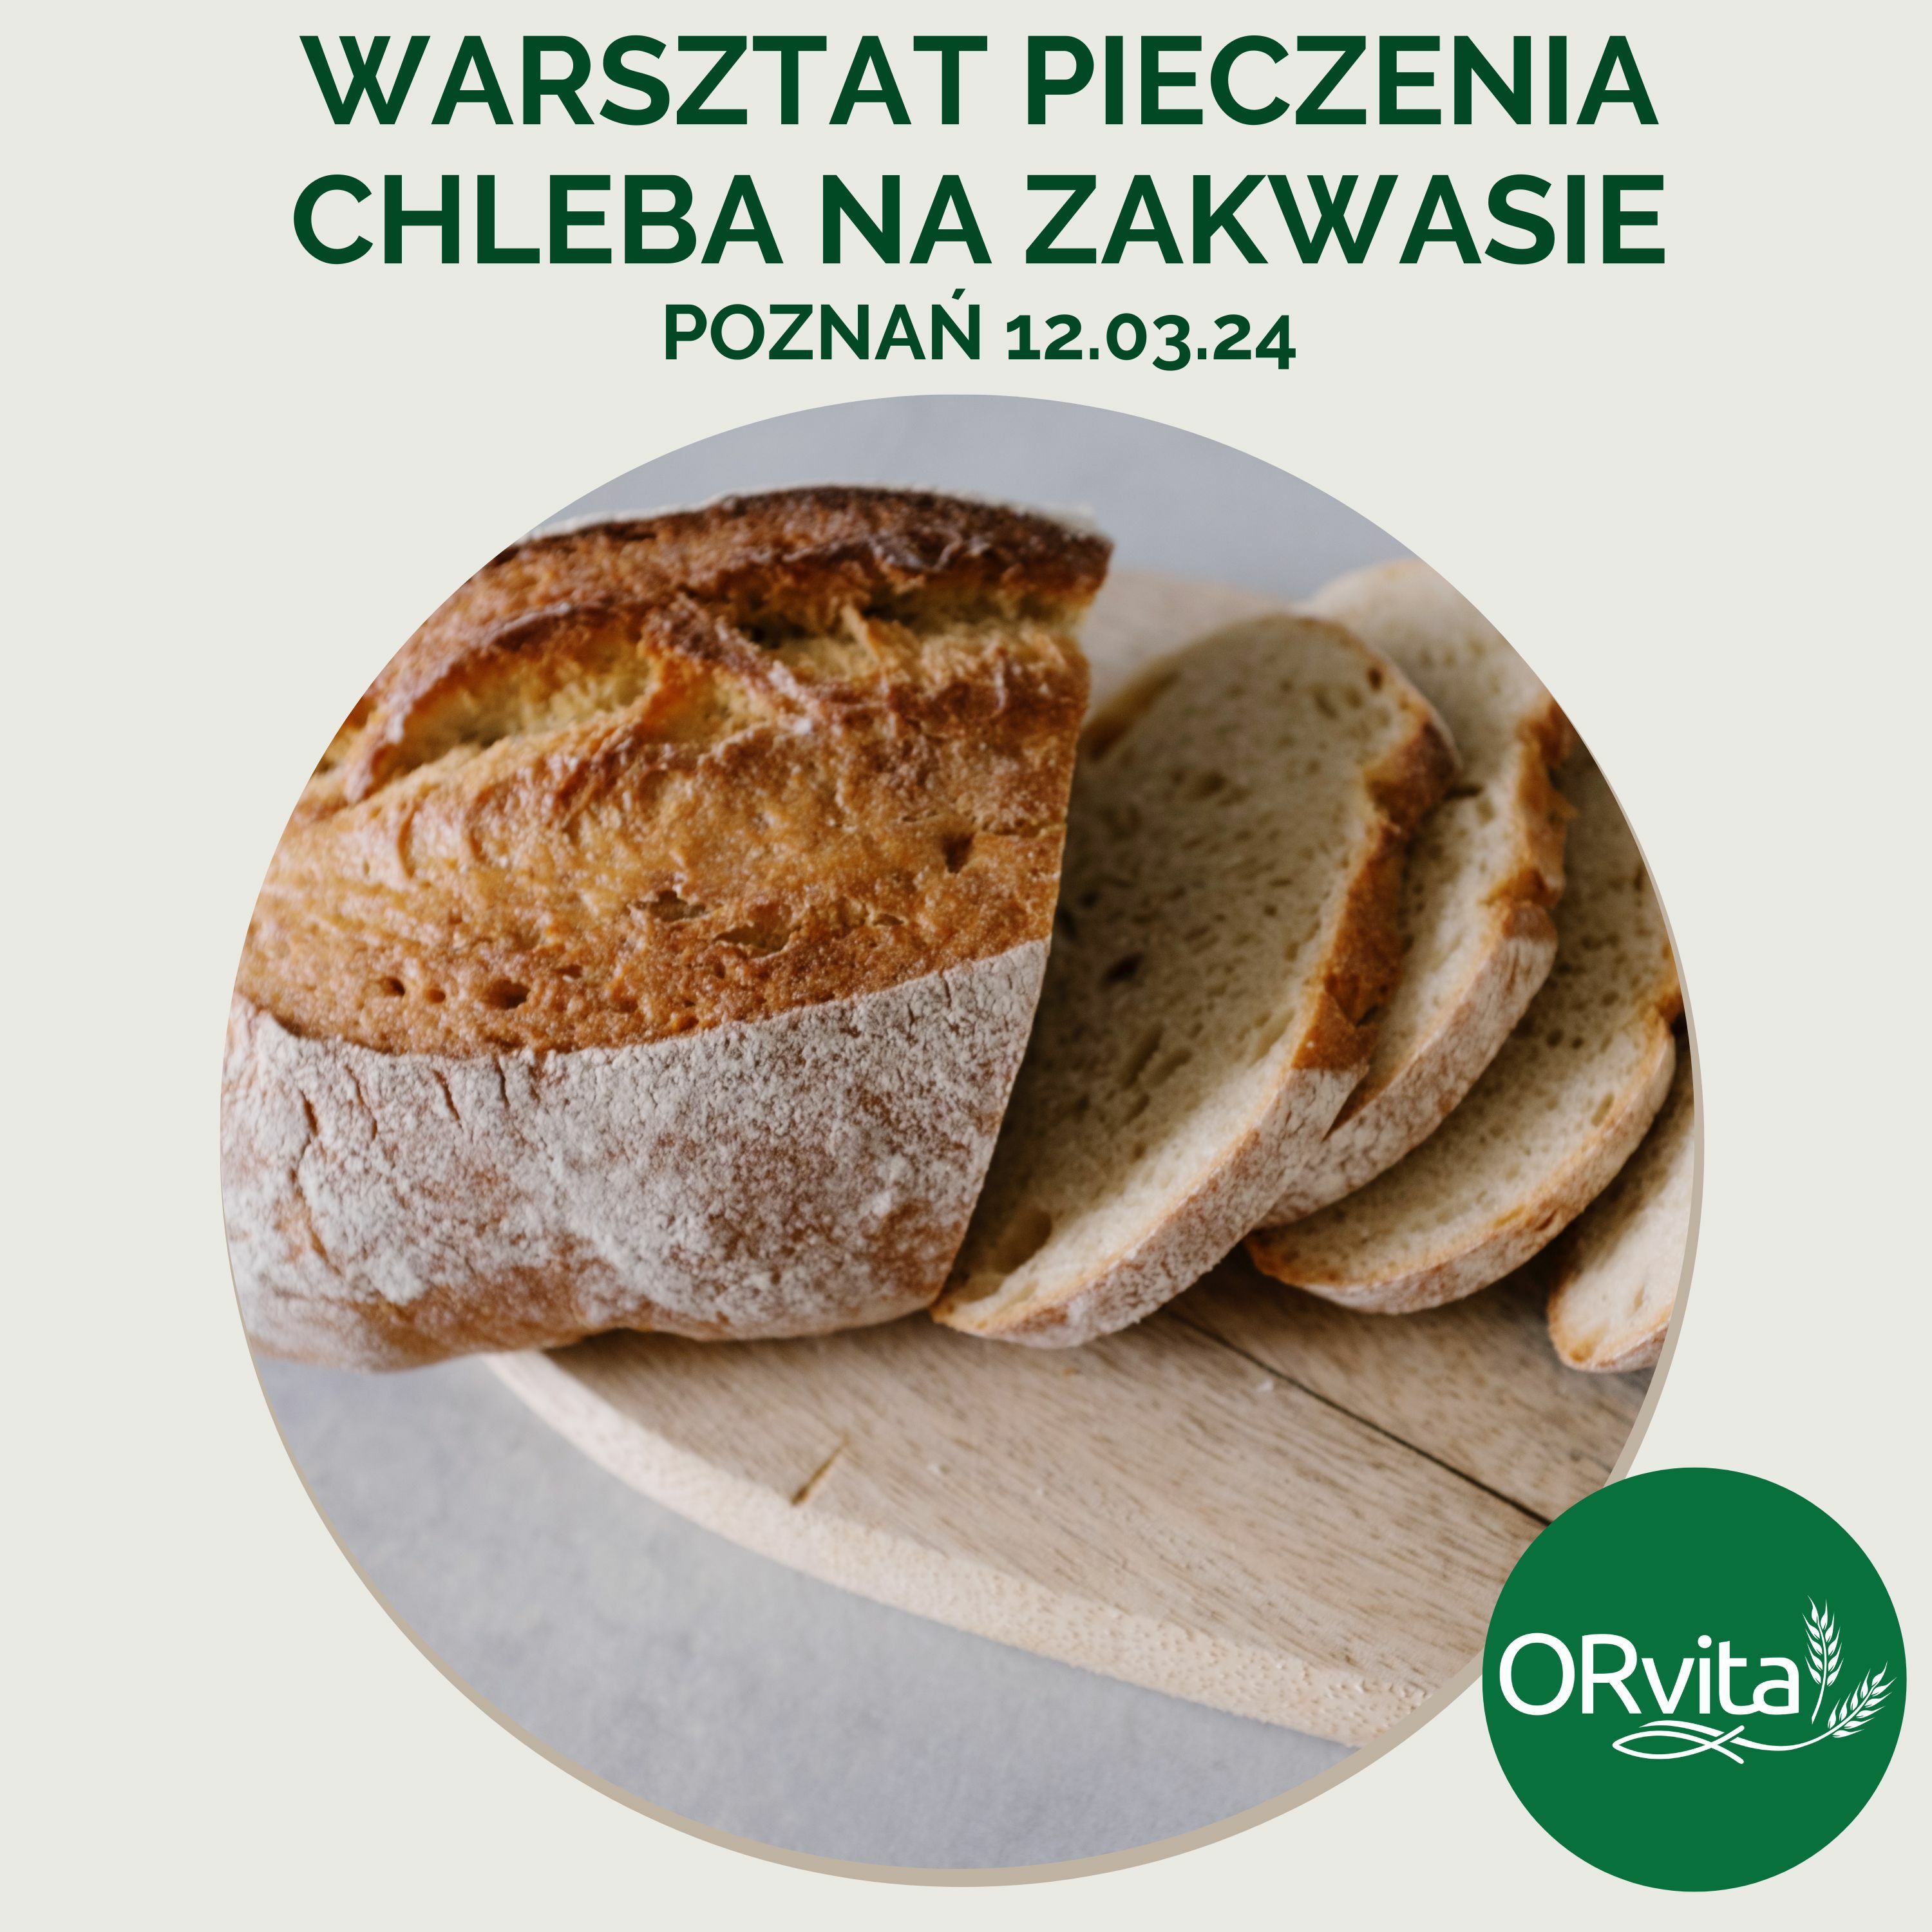 WARSZTAT PIECZENIA CHLEBA - Poznań 12.03.24